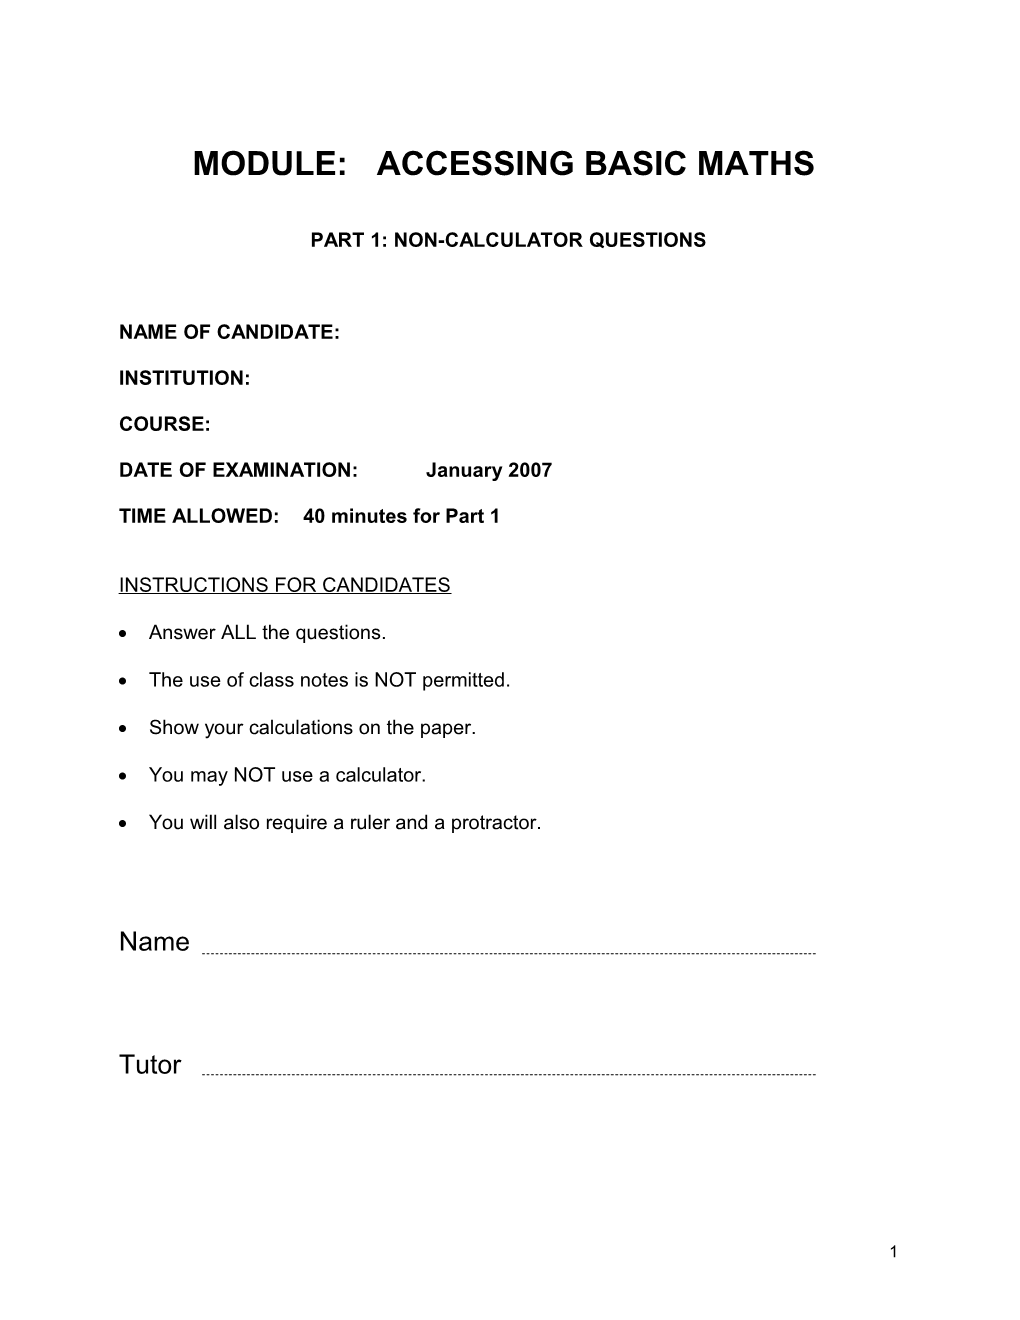 Module: Accessing Basic Maths